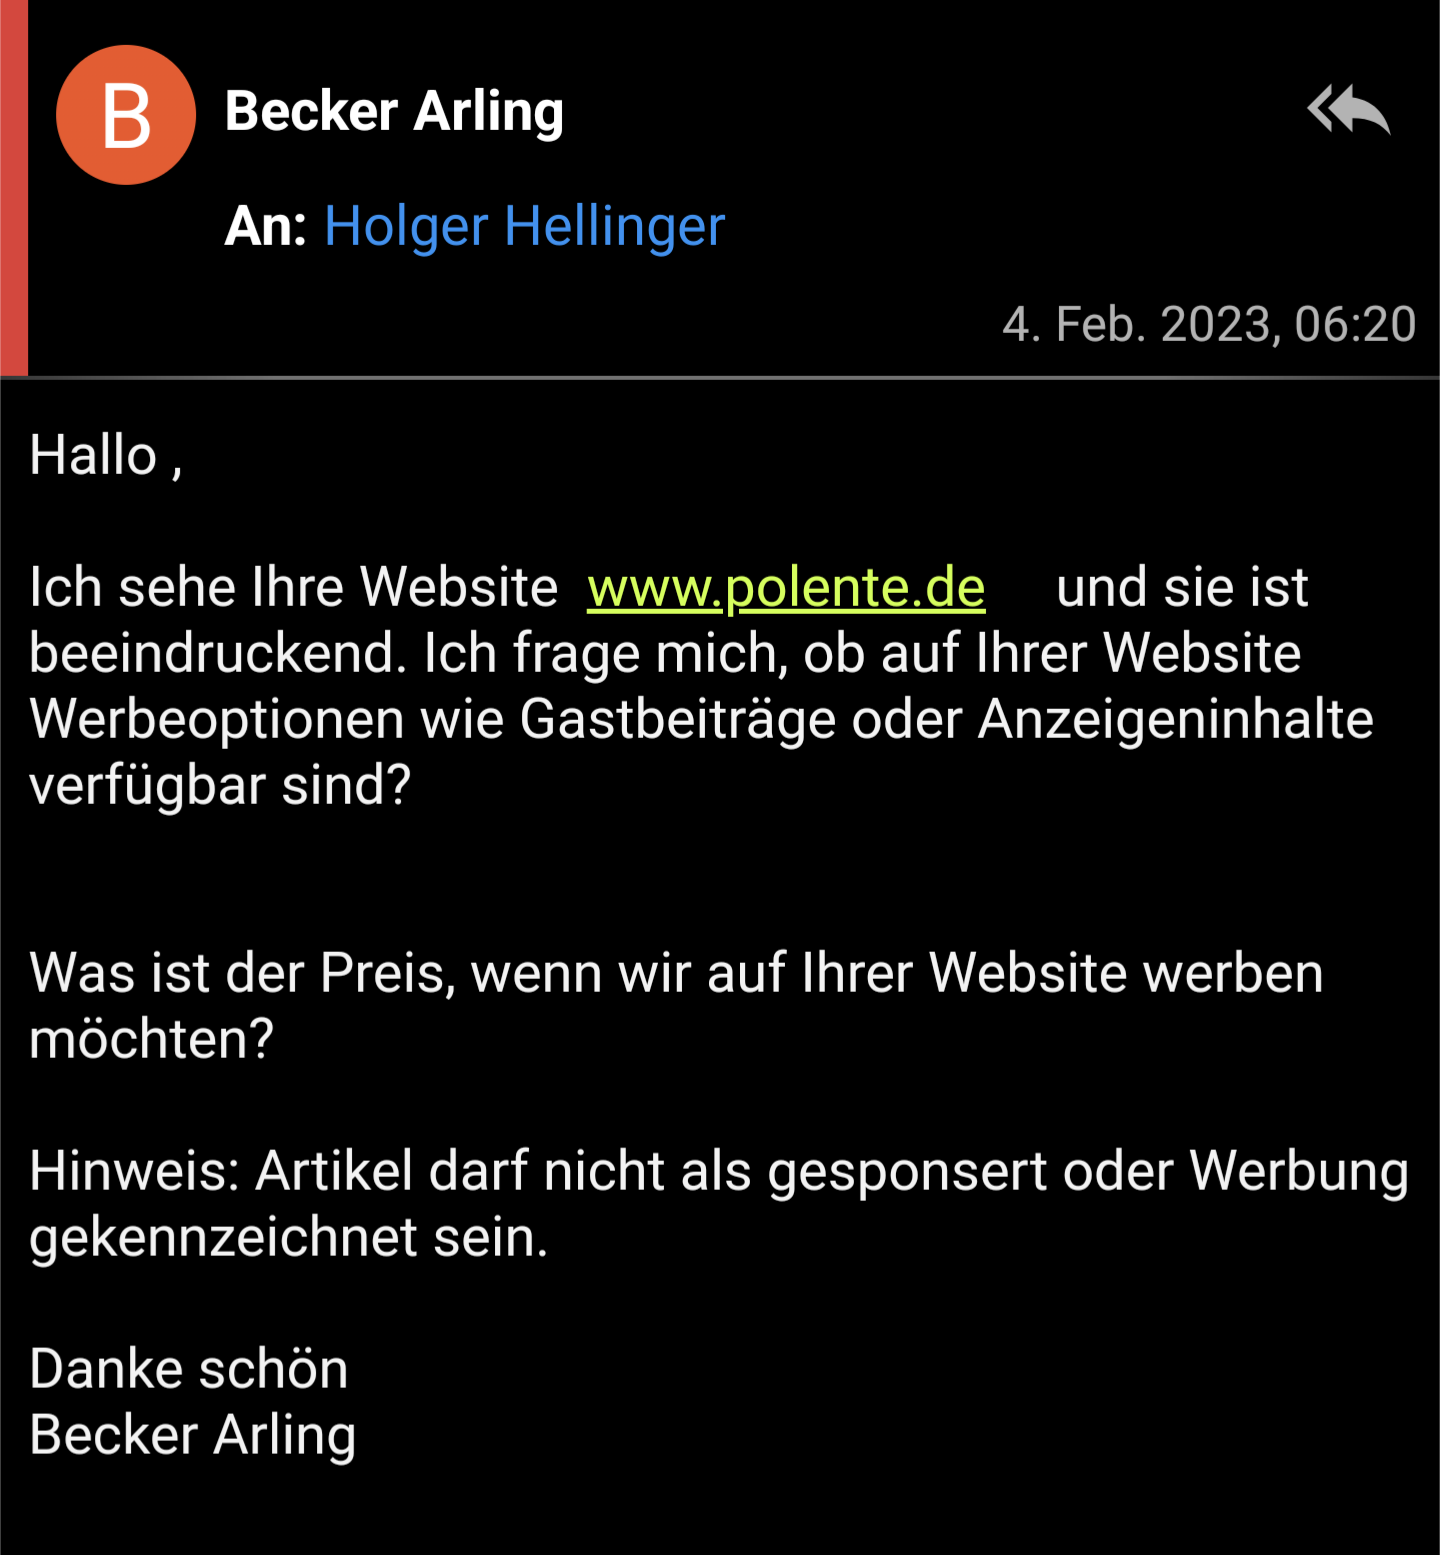 Hallo , Ich sehe Ihre Website www.polente.de und sie ist beeindruckend. Ich frage mich, ob auf Ihrer Website Werbeoptionen wie Gastbeiträge oder Anzeigeninhalte verfügbar sind? Was ist der Preis, wenn wir auf Ihrer Website werben möchten? Hinweis: Artikel darf nicht als gesponsert oder Werbung gekennzeichnet sein. Danke schön Becker Arling